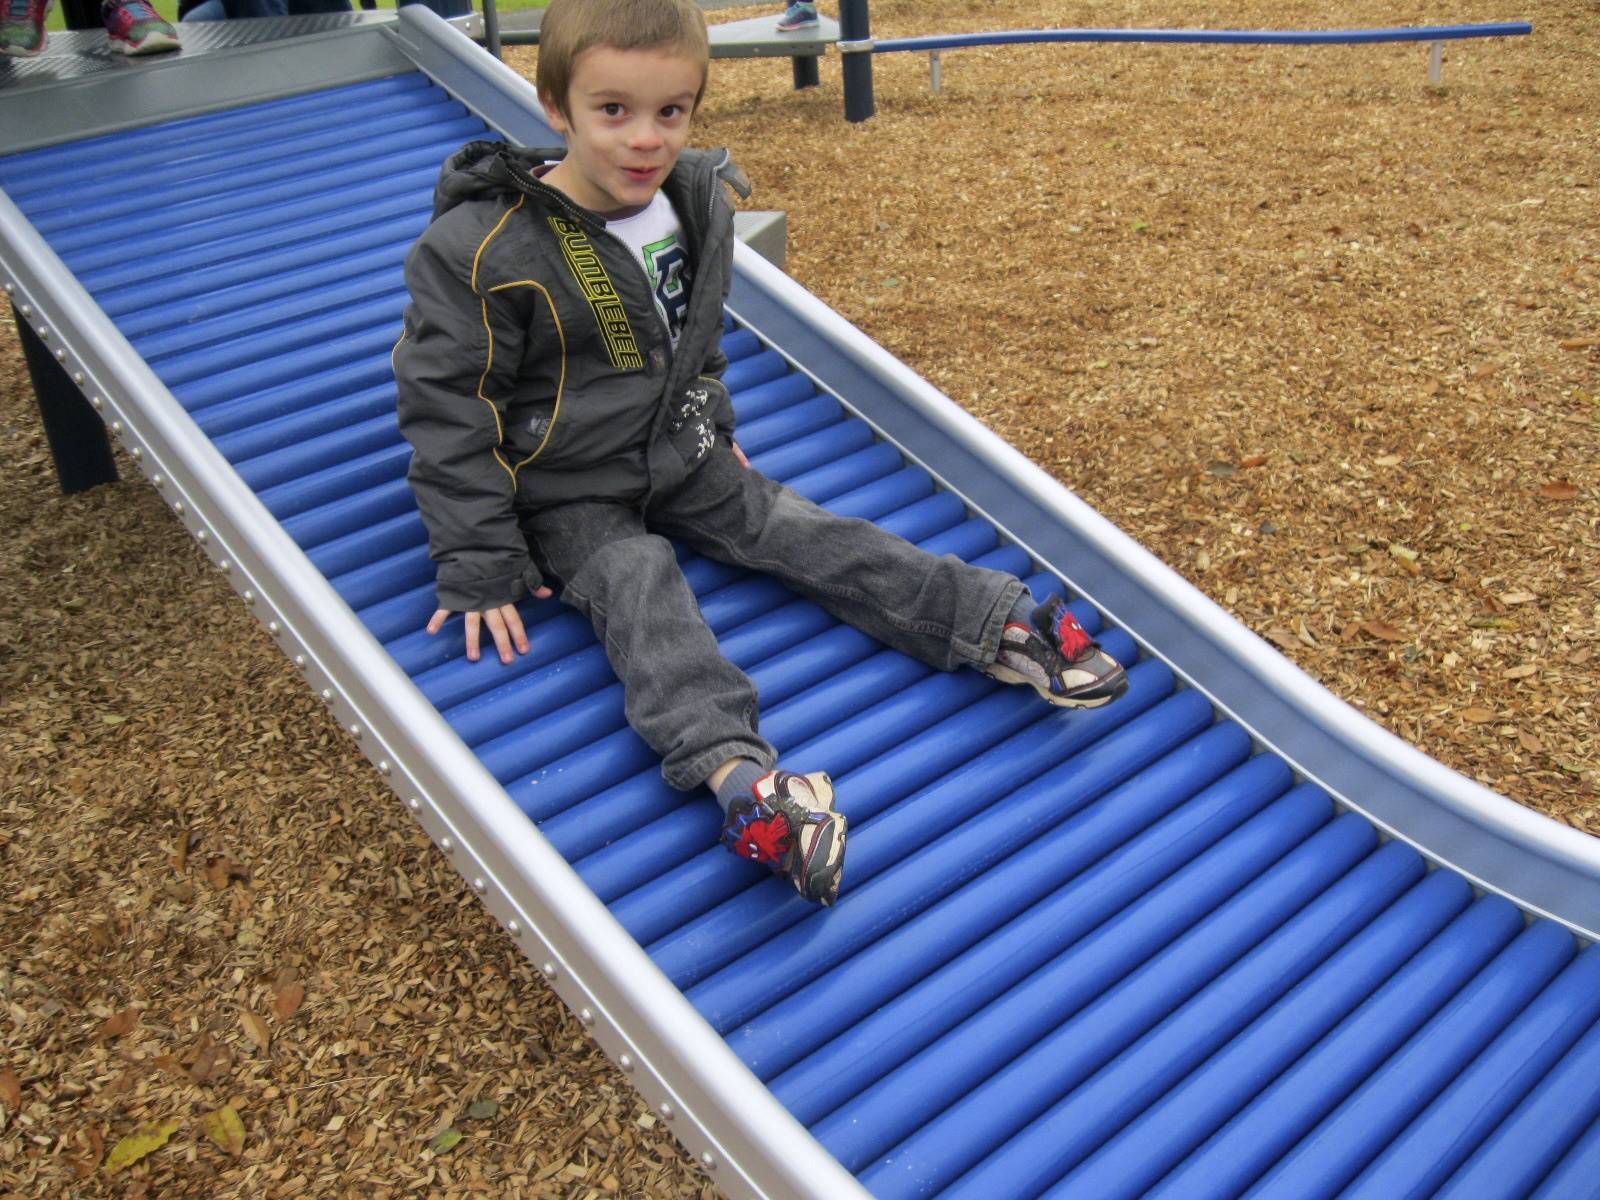 a student slides on roller slide.